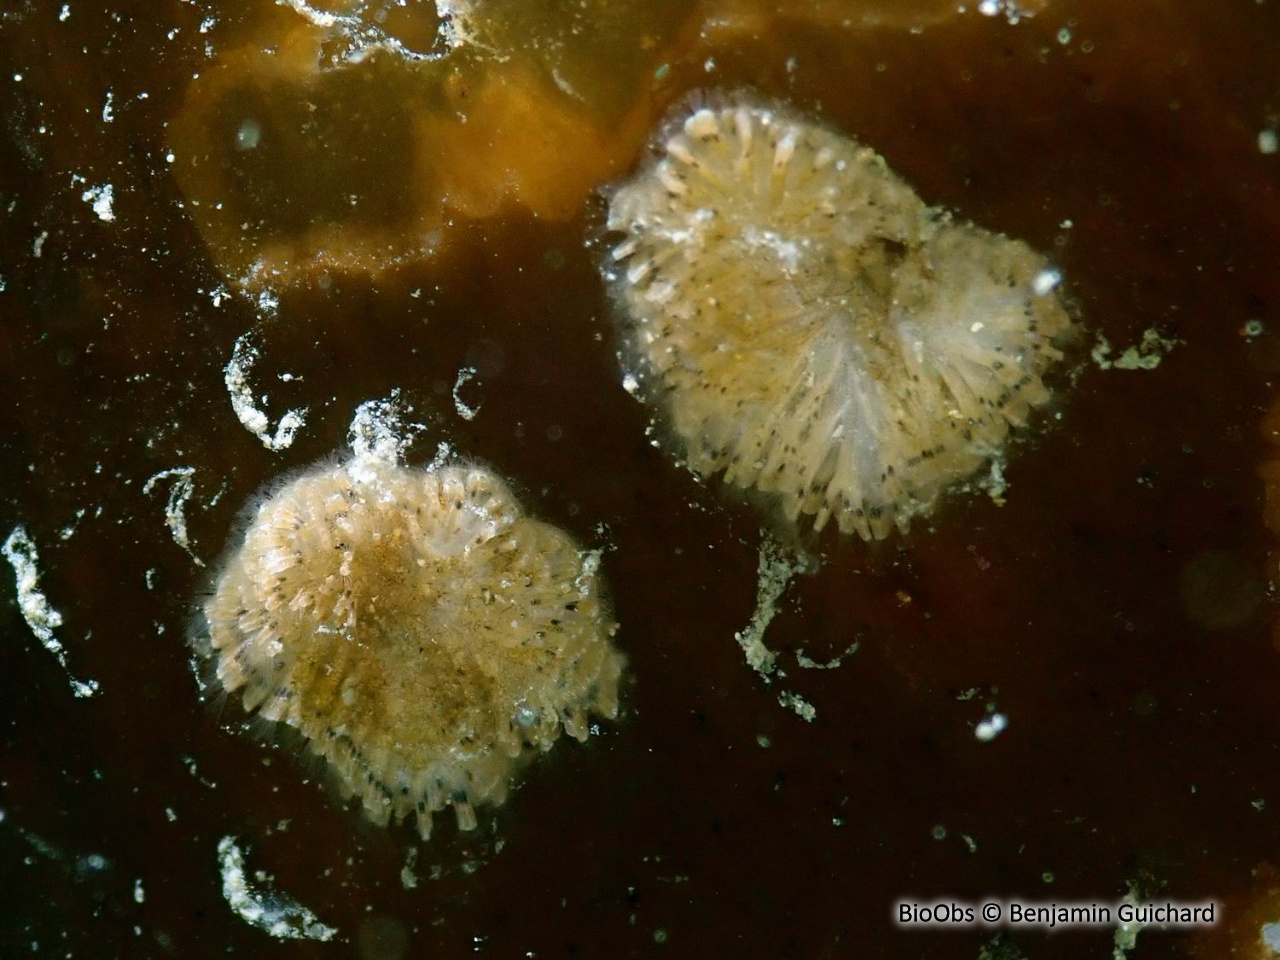 Tubulipore plumeux - Tubulipora plumosa - Benjamin Guichard - BioObs